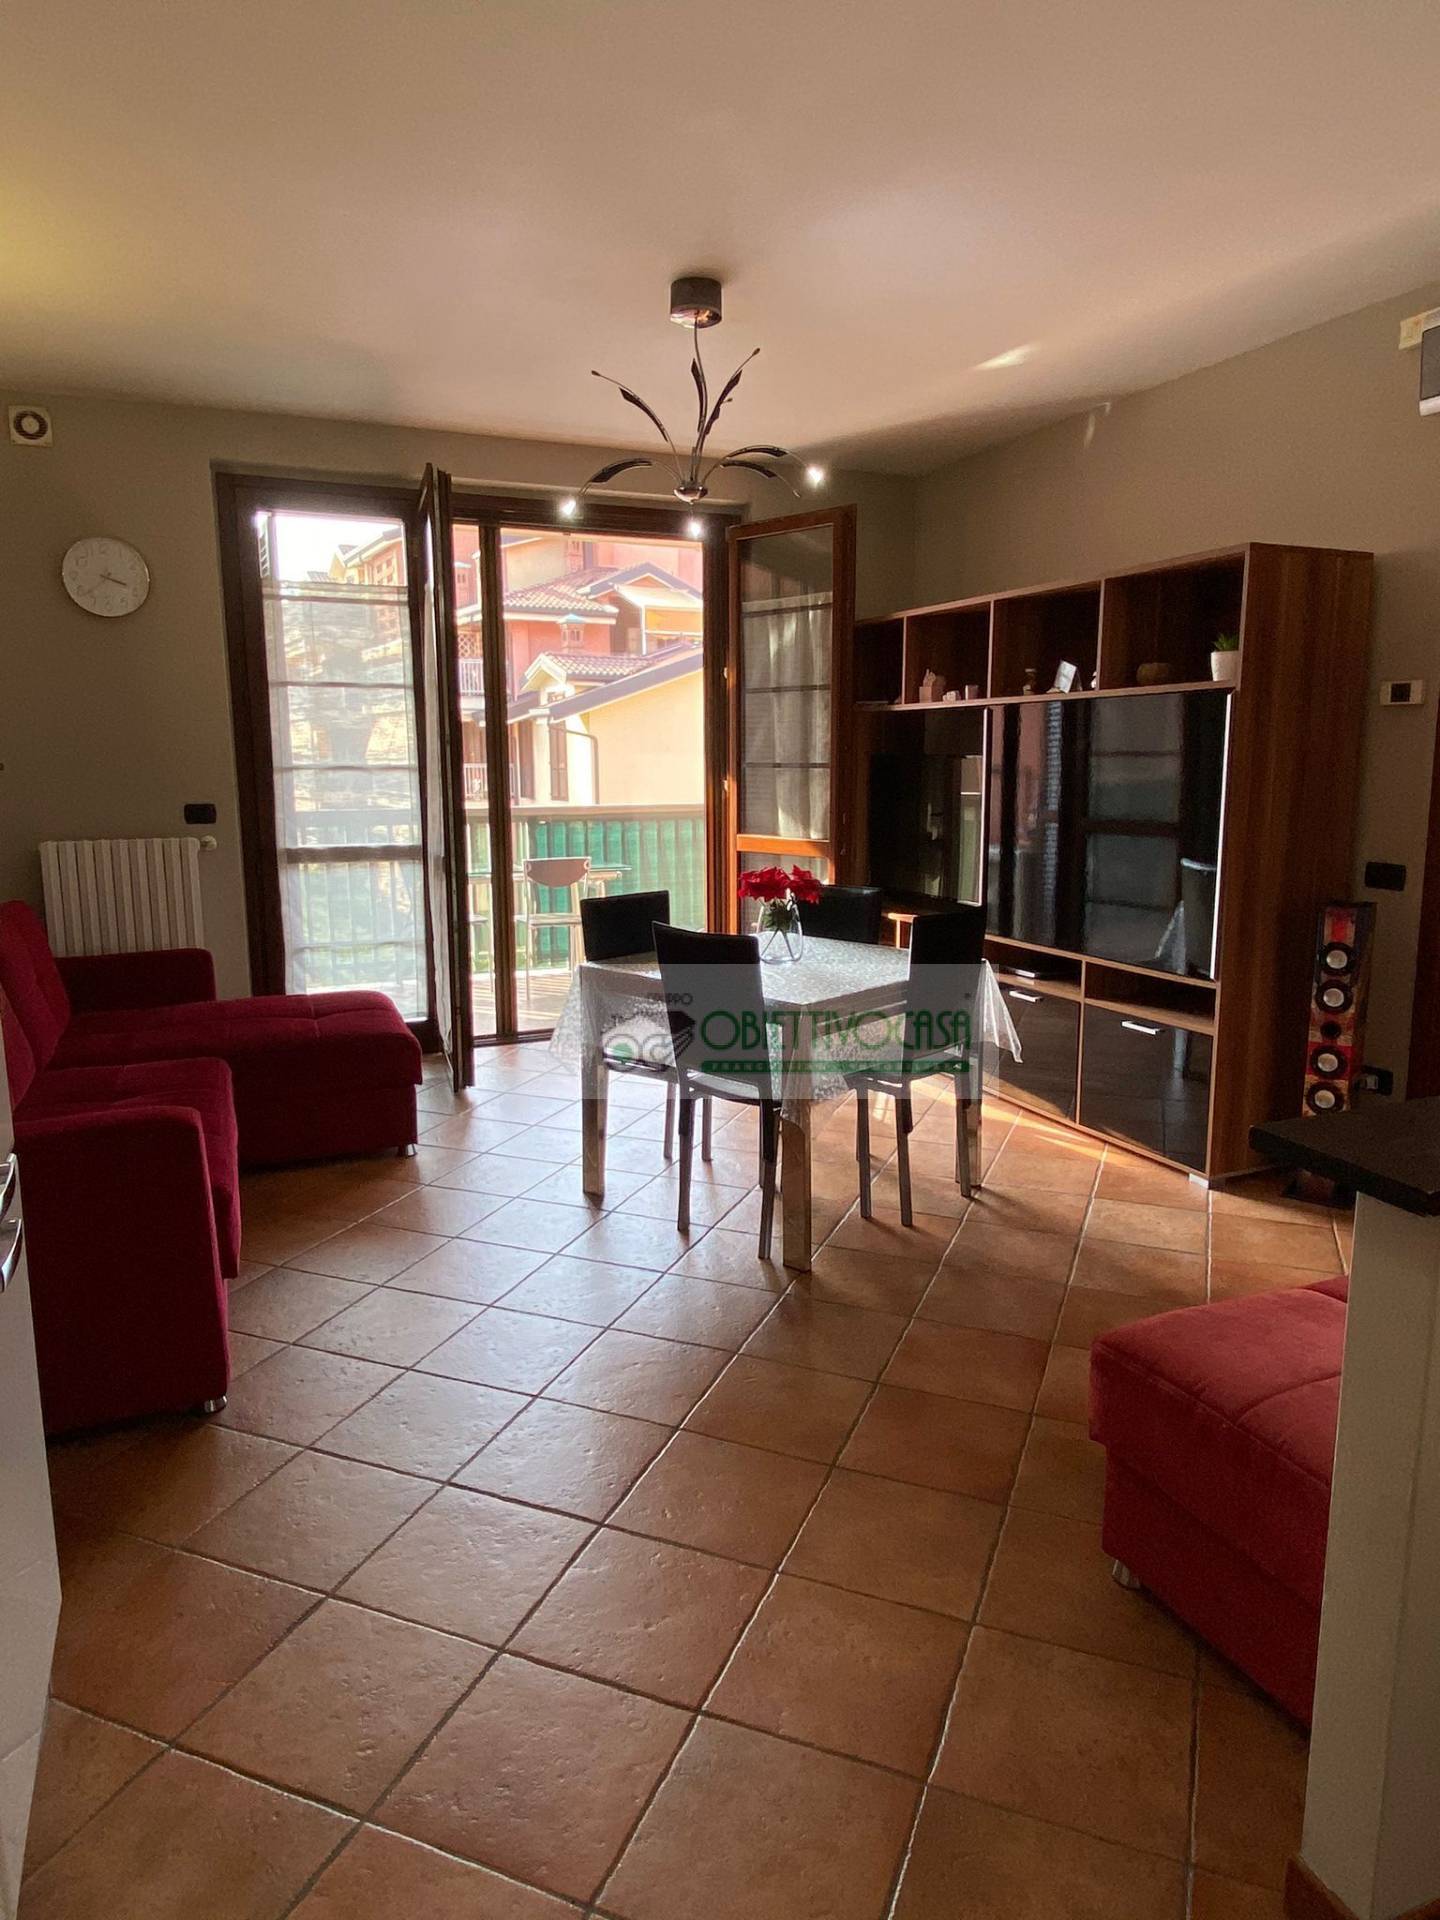 Appartamento in affitto a Trezzano sul Naviglio, 2 locali, zona Località: Morona, prezzo € 680 | CambioCasa.it